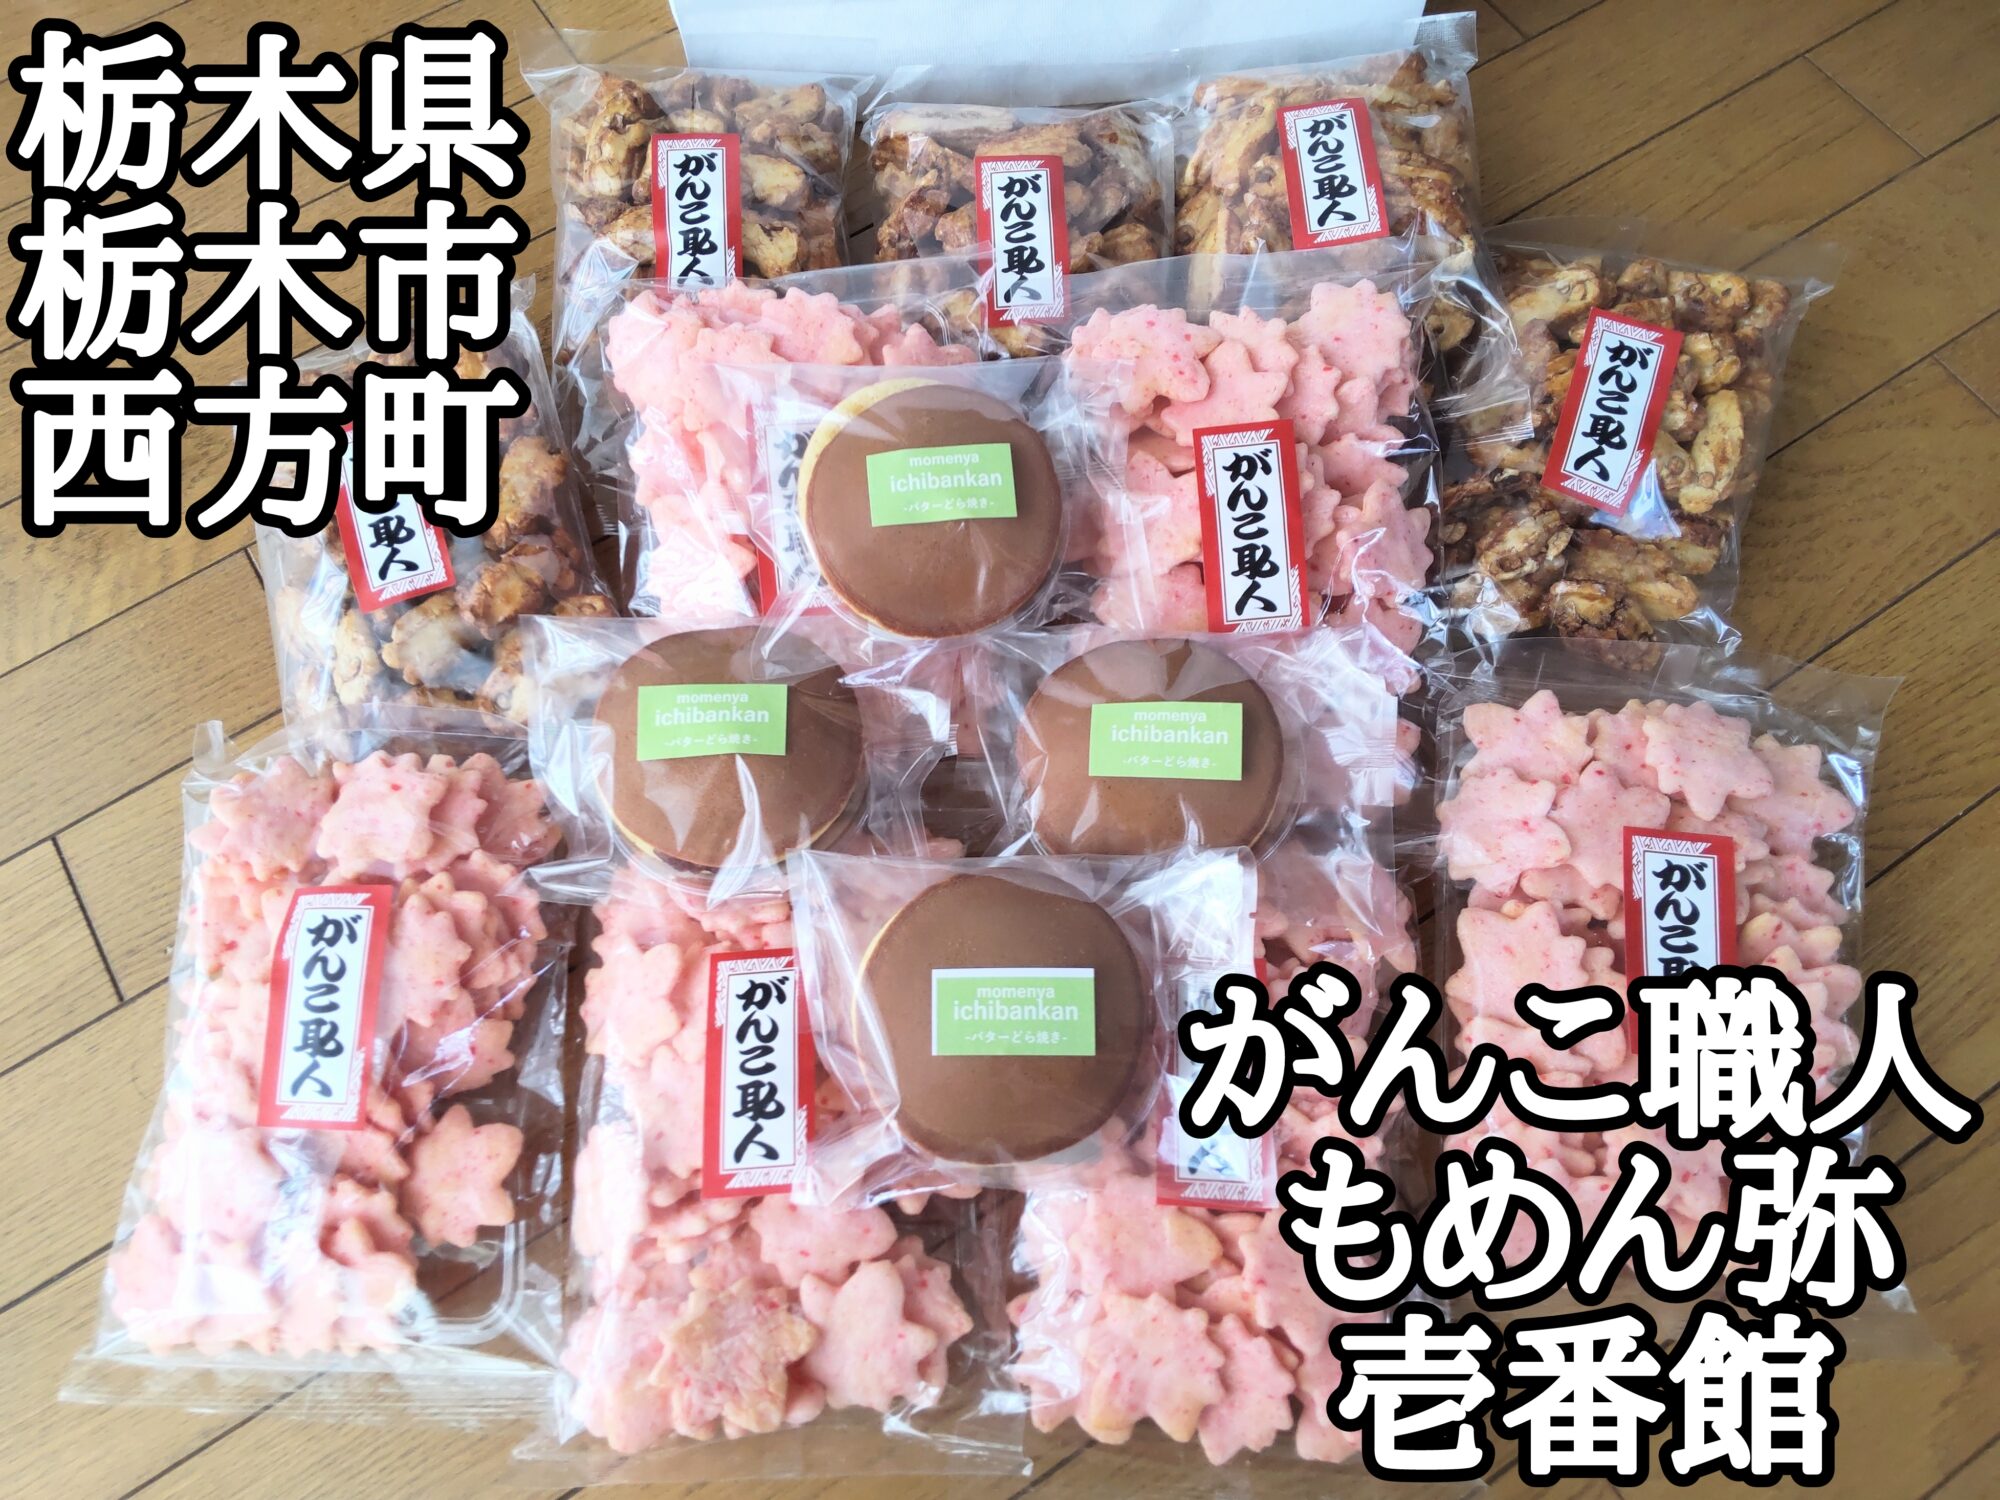 【栃木県】【栃木市】「がんこ職人 もめん弥 壱番館」和菓子・おかきの工場直売所でお煎餅を格安に購入出来ました